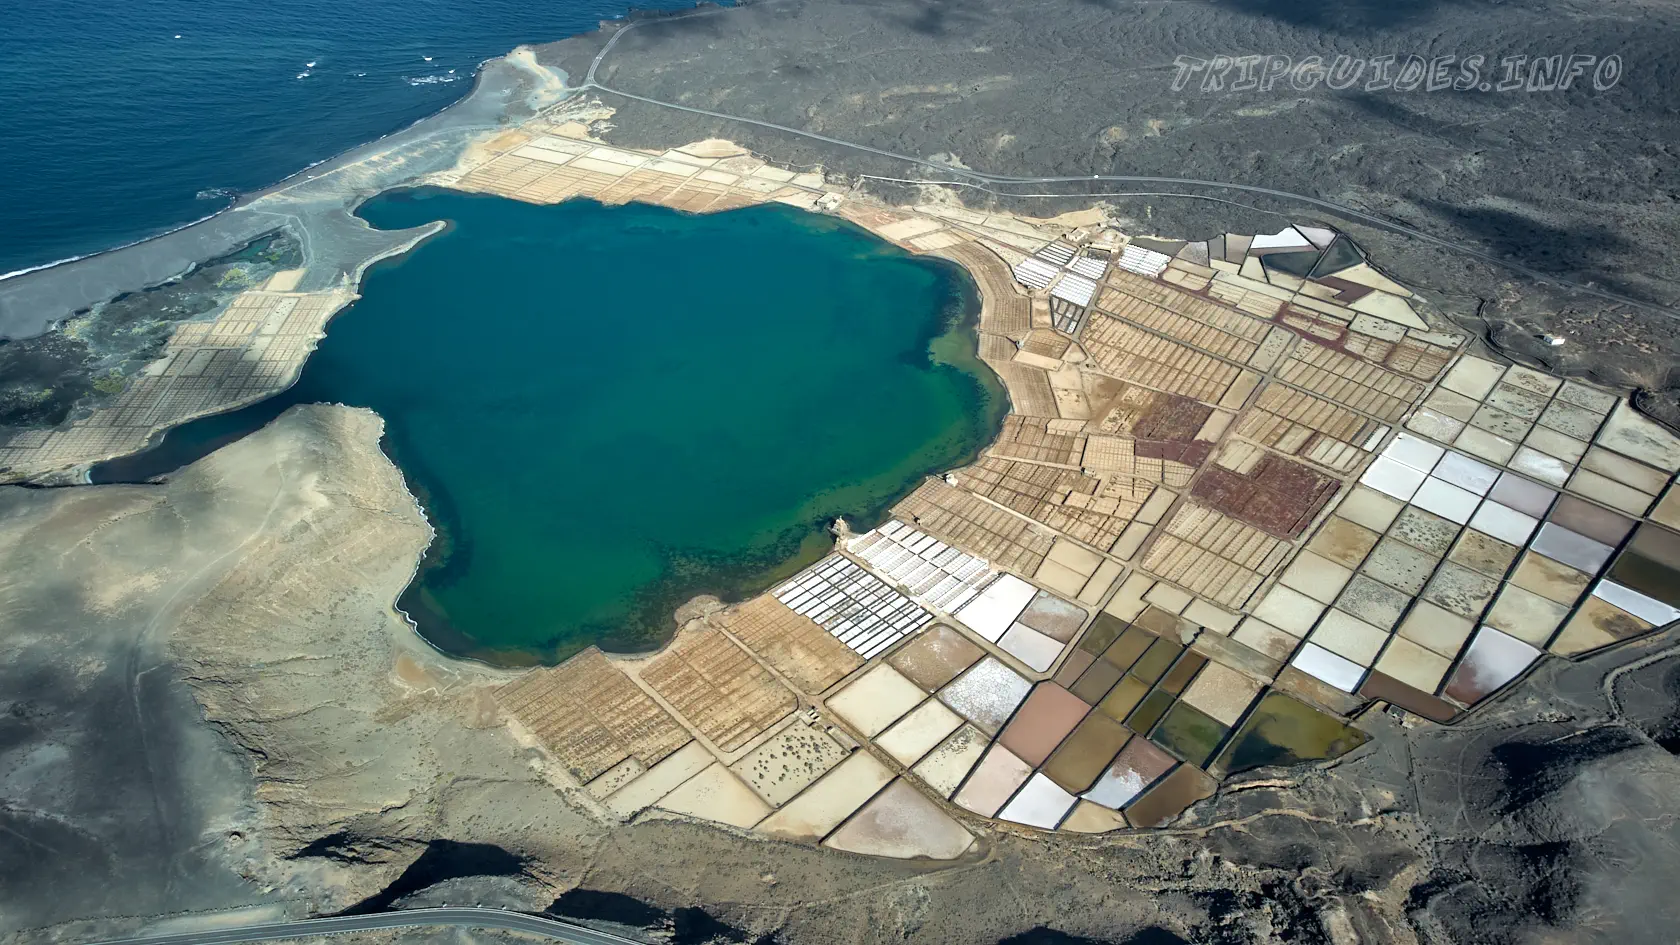 Соляные озера Ханубио (Salinas de Janubio) - солончаки на Лансароте